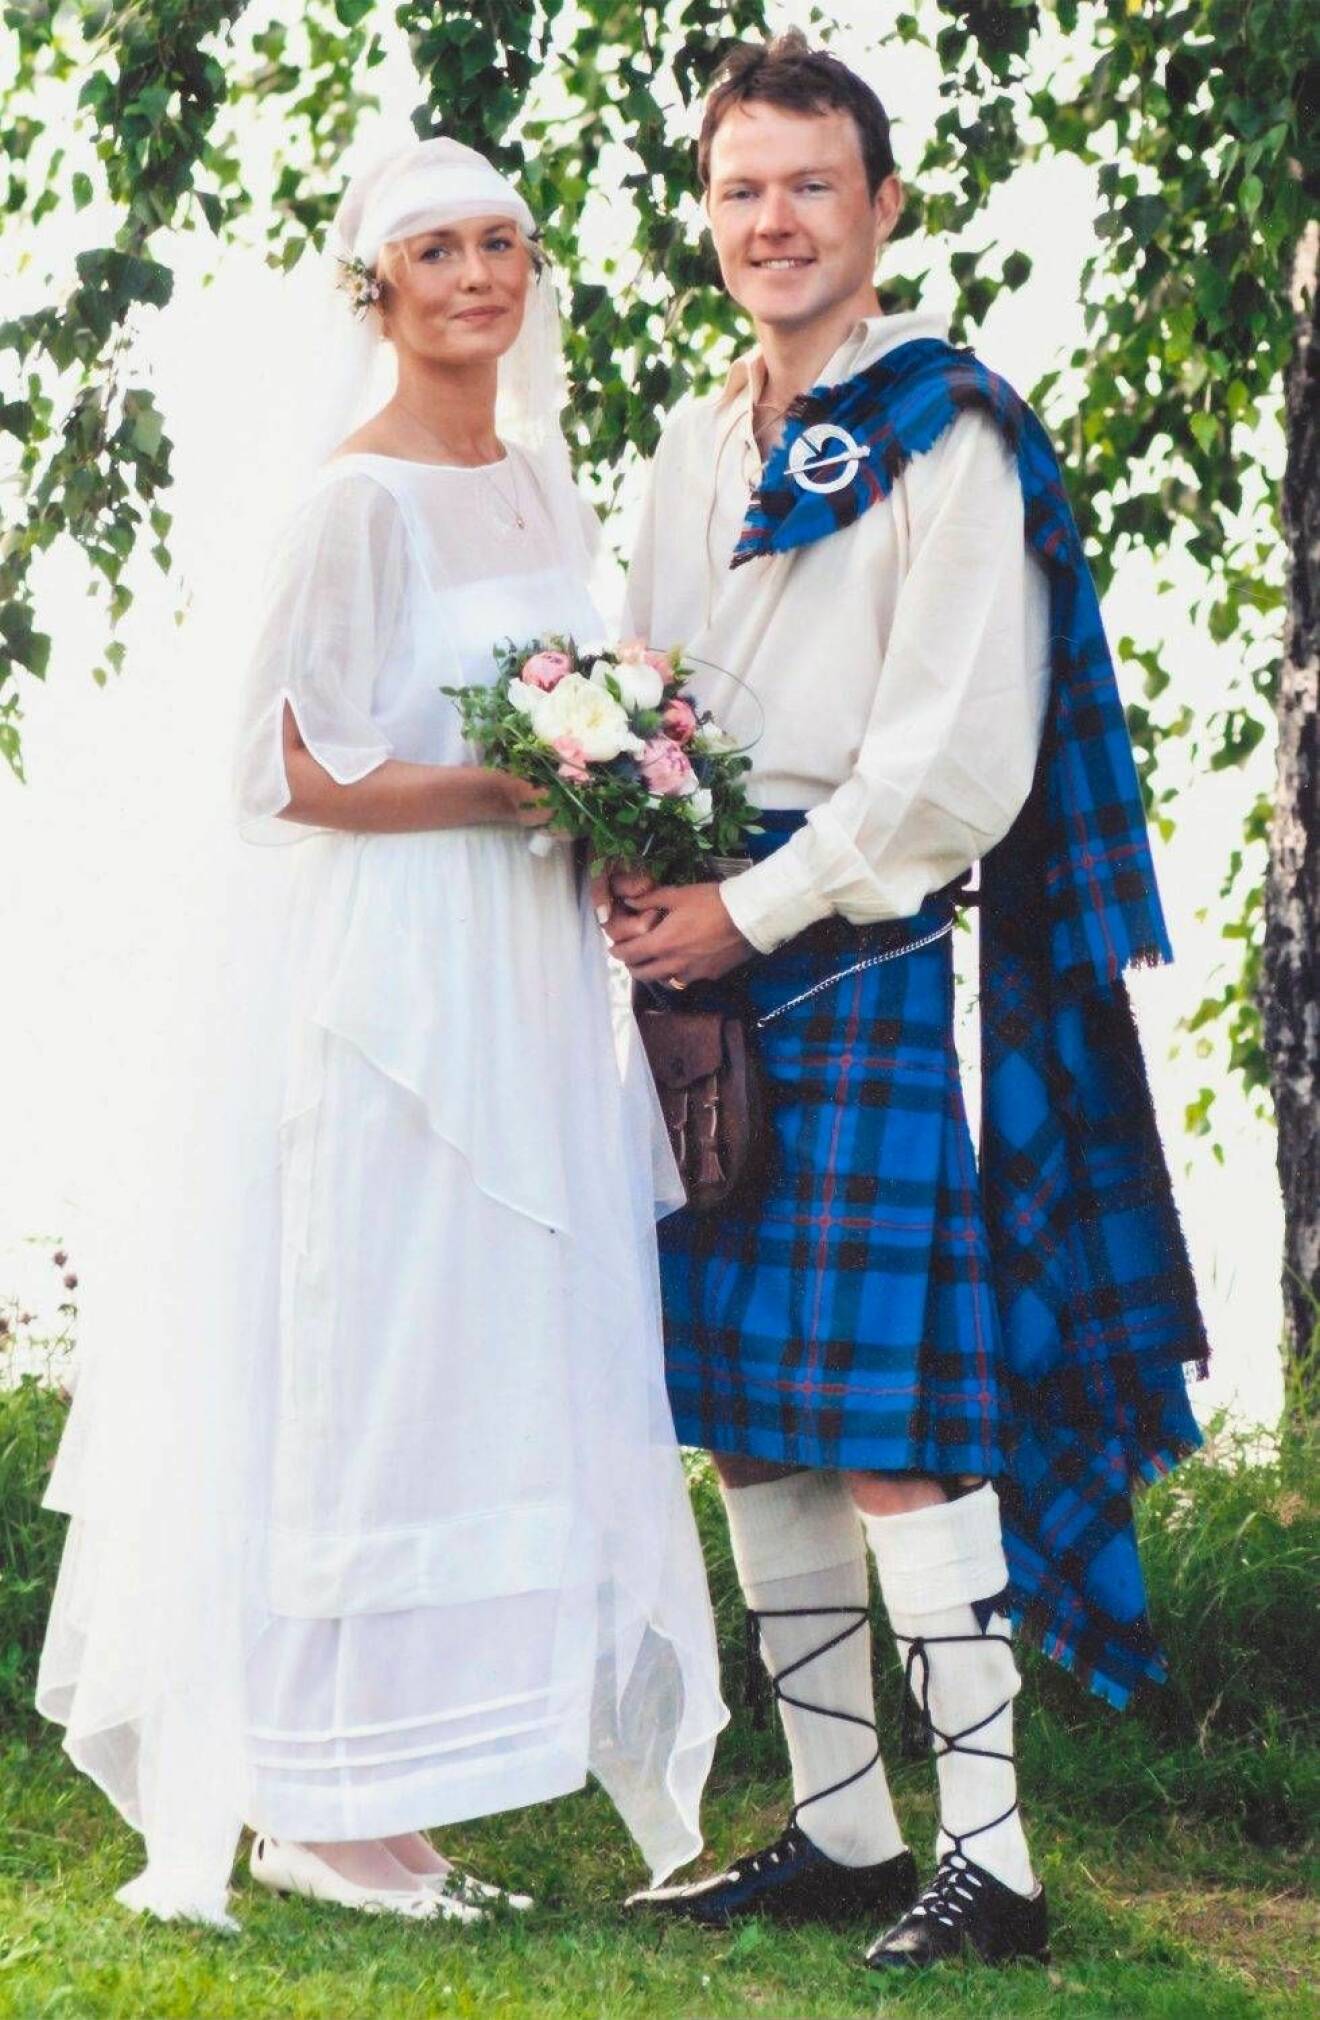 Ett ungt par gifter sig, mannen klädd i irländsk kilt.